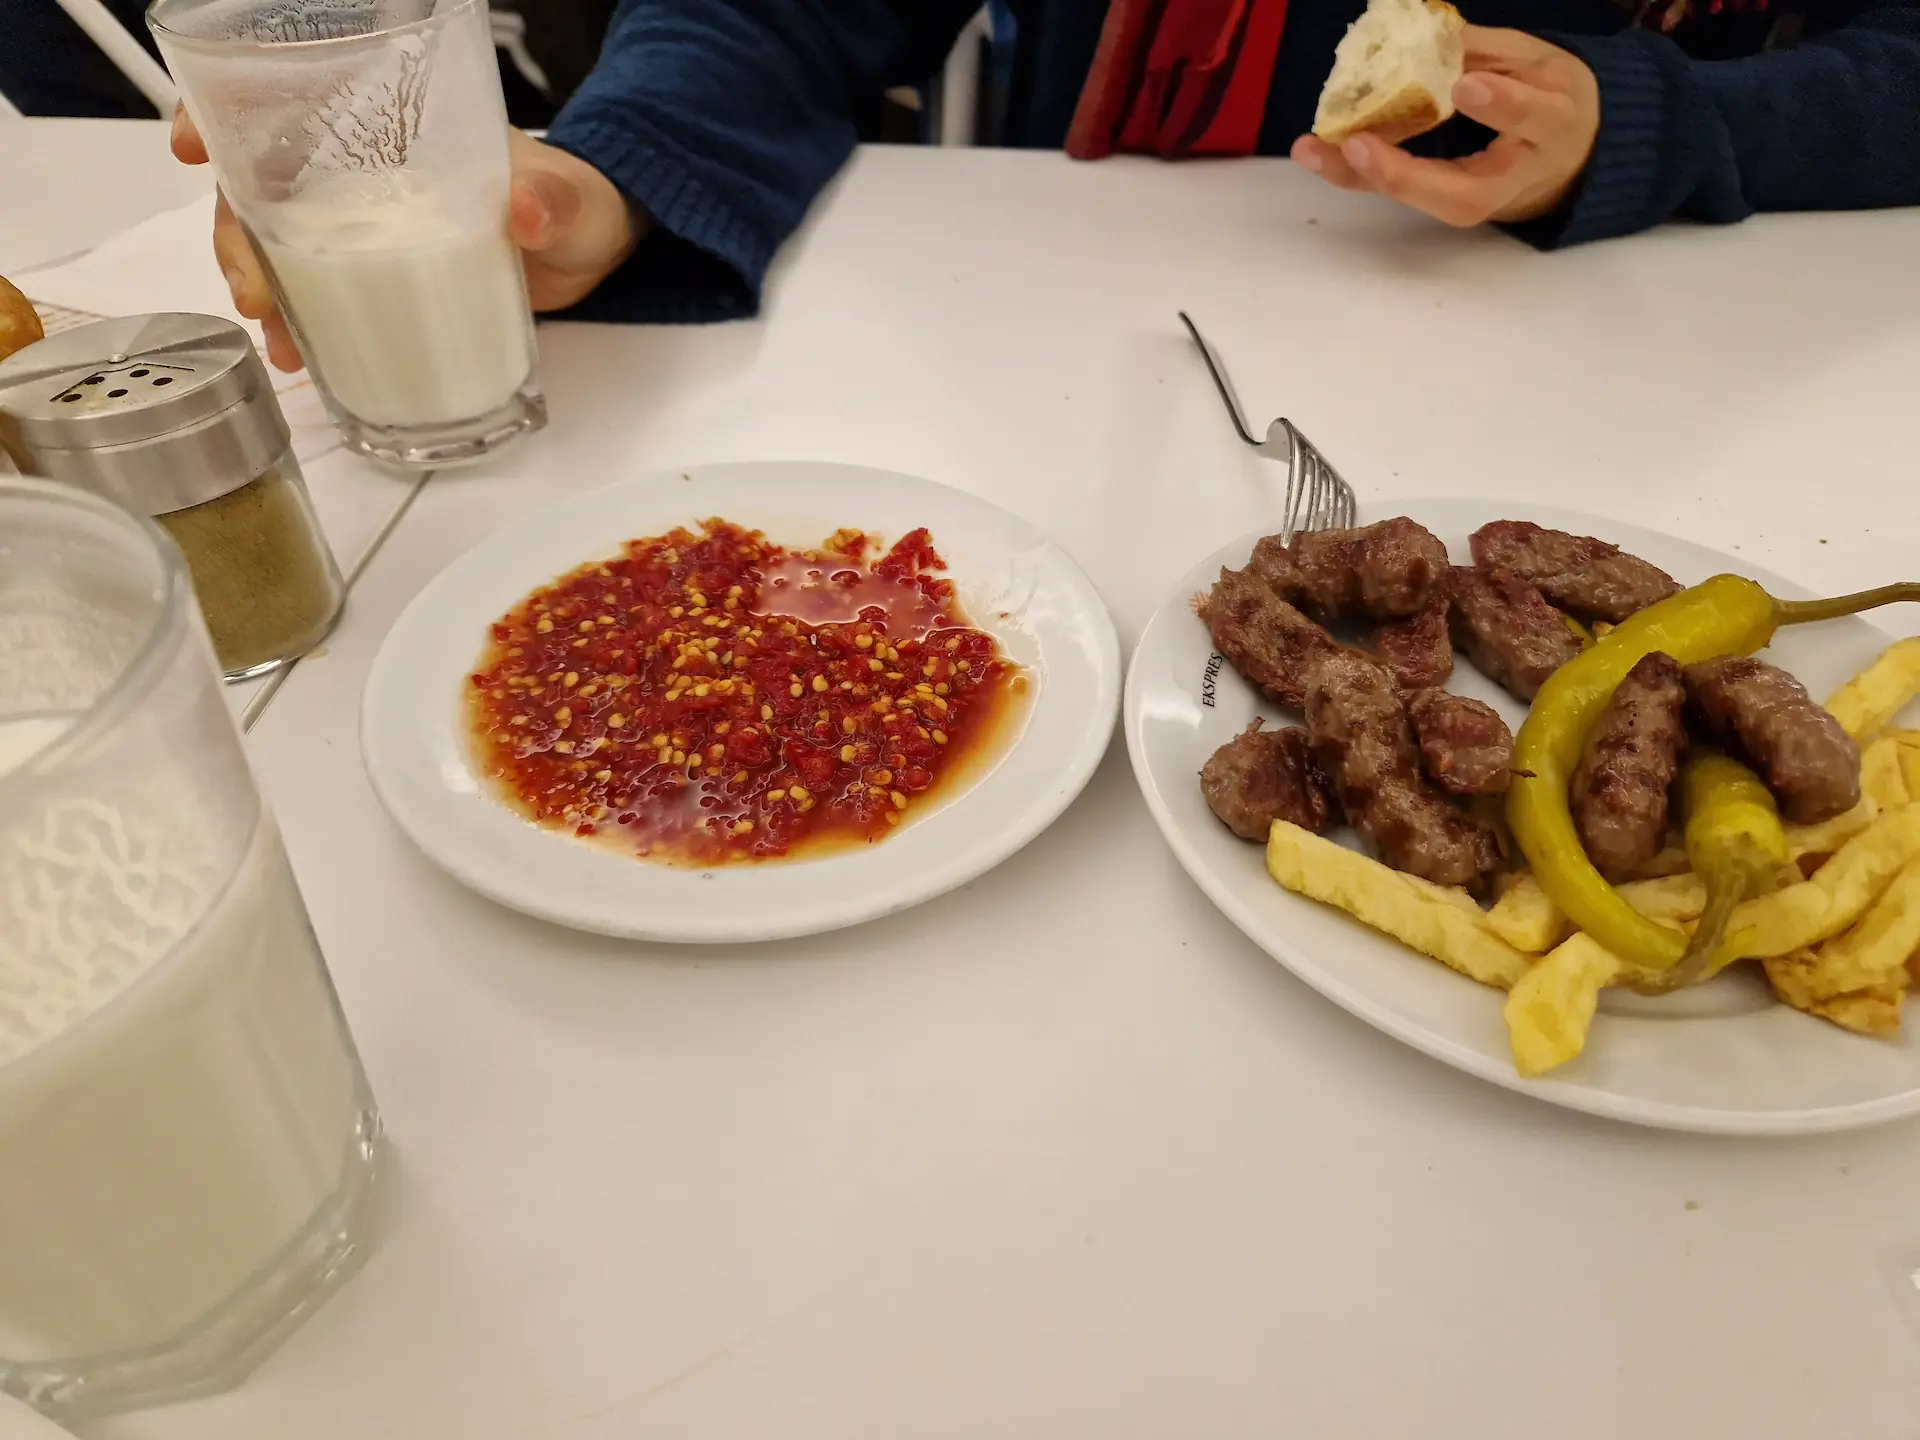 Sur une table blanche, deux assiettes : la première avec des köfte, des piments verts et des frites, la seconde avec une sauce aux piments très rouge. Il y a également deux grands verres de ayran maison.